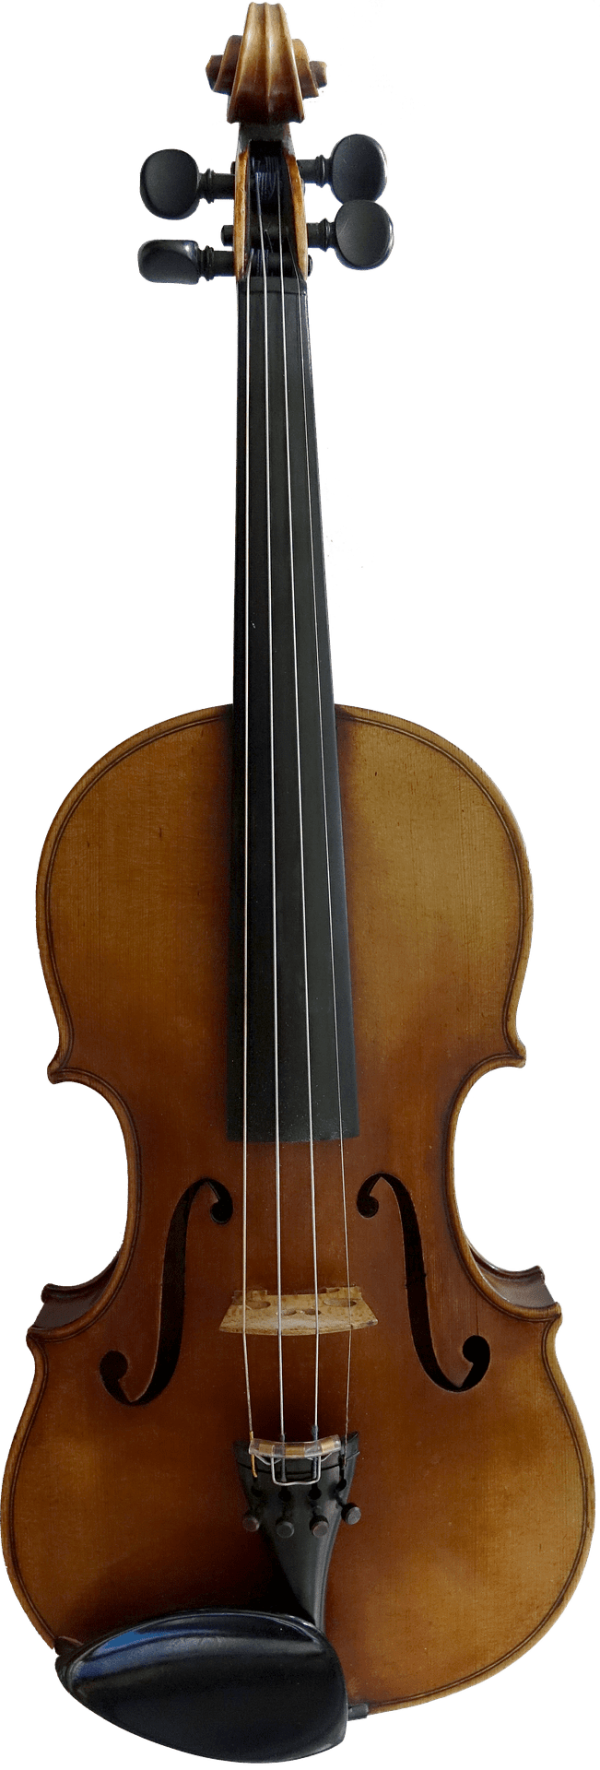 violin-1638742_1920 (2).png